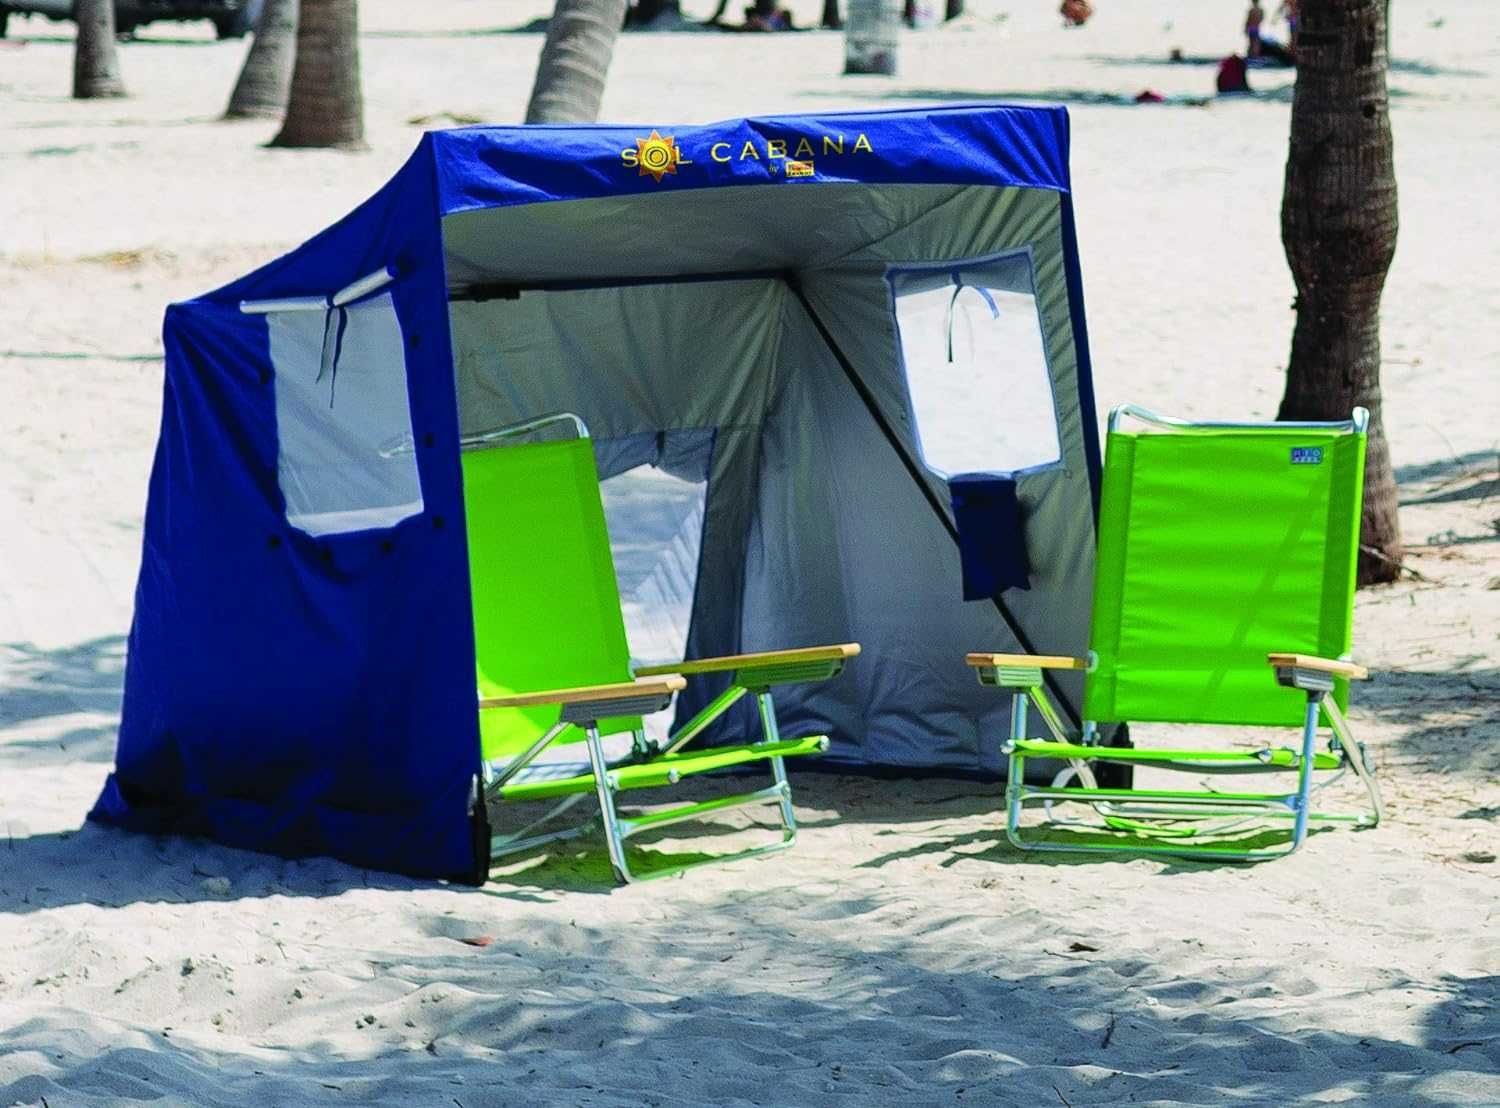 Zadaszenie namiot Rio Sol Cabana Sun Shelter, niebieski